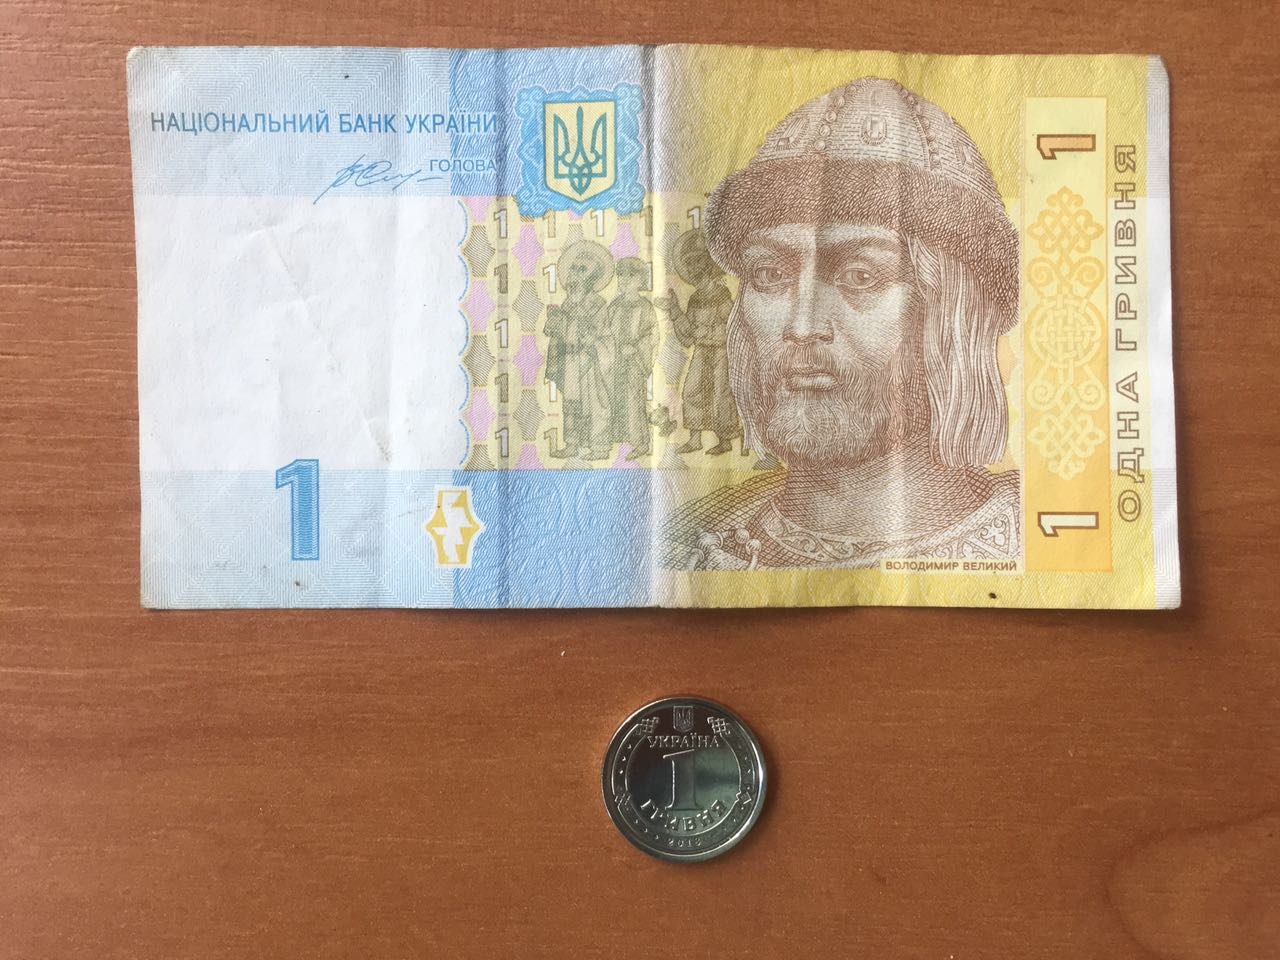 Неизвестная гривна: как она появилась и развивалась украинская валюта. Новости Днепра